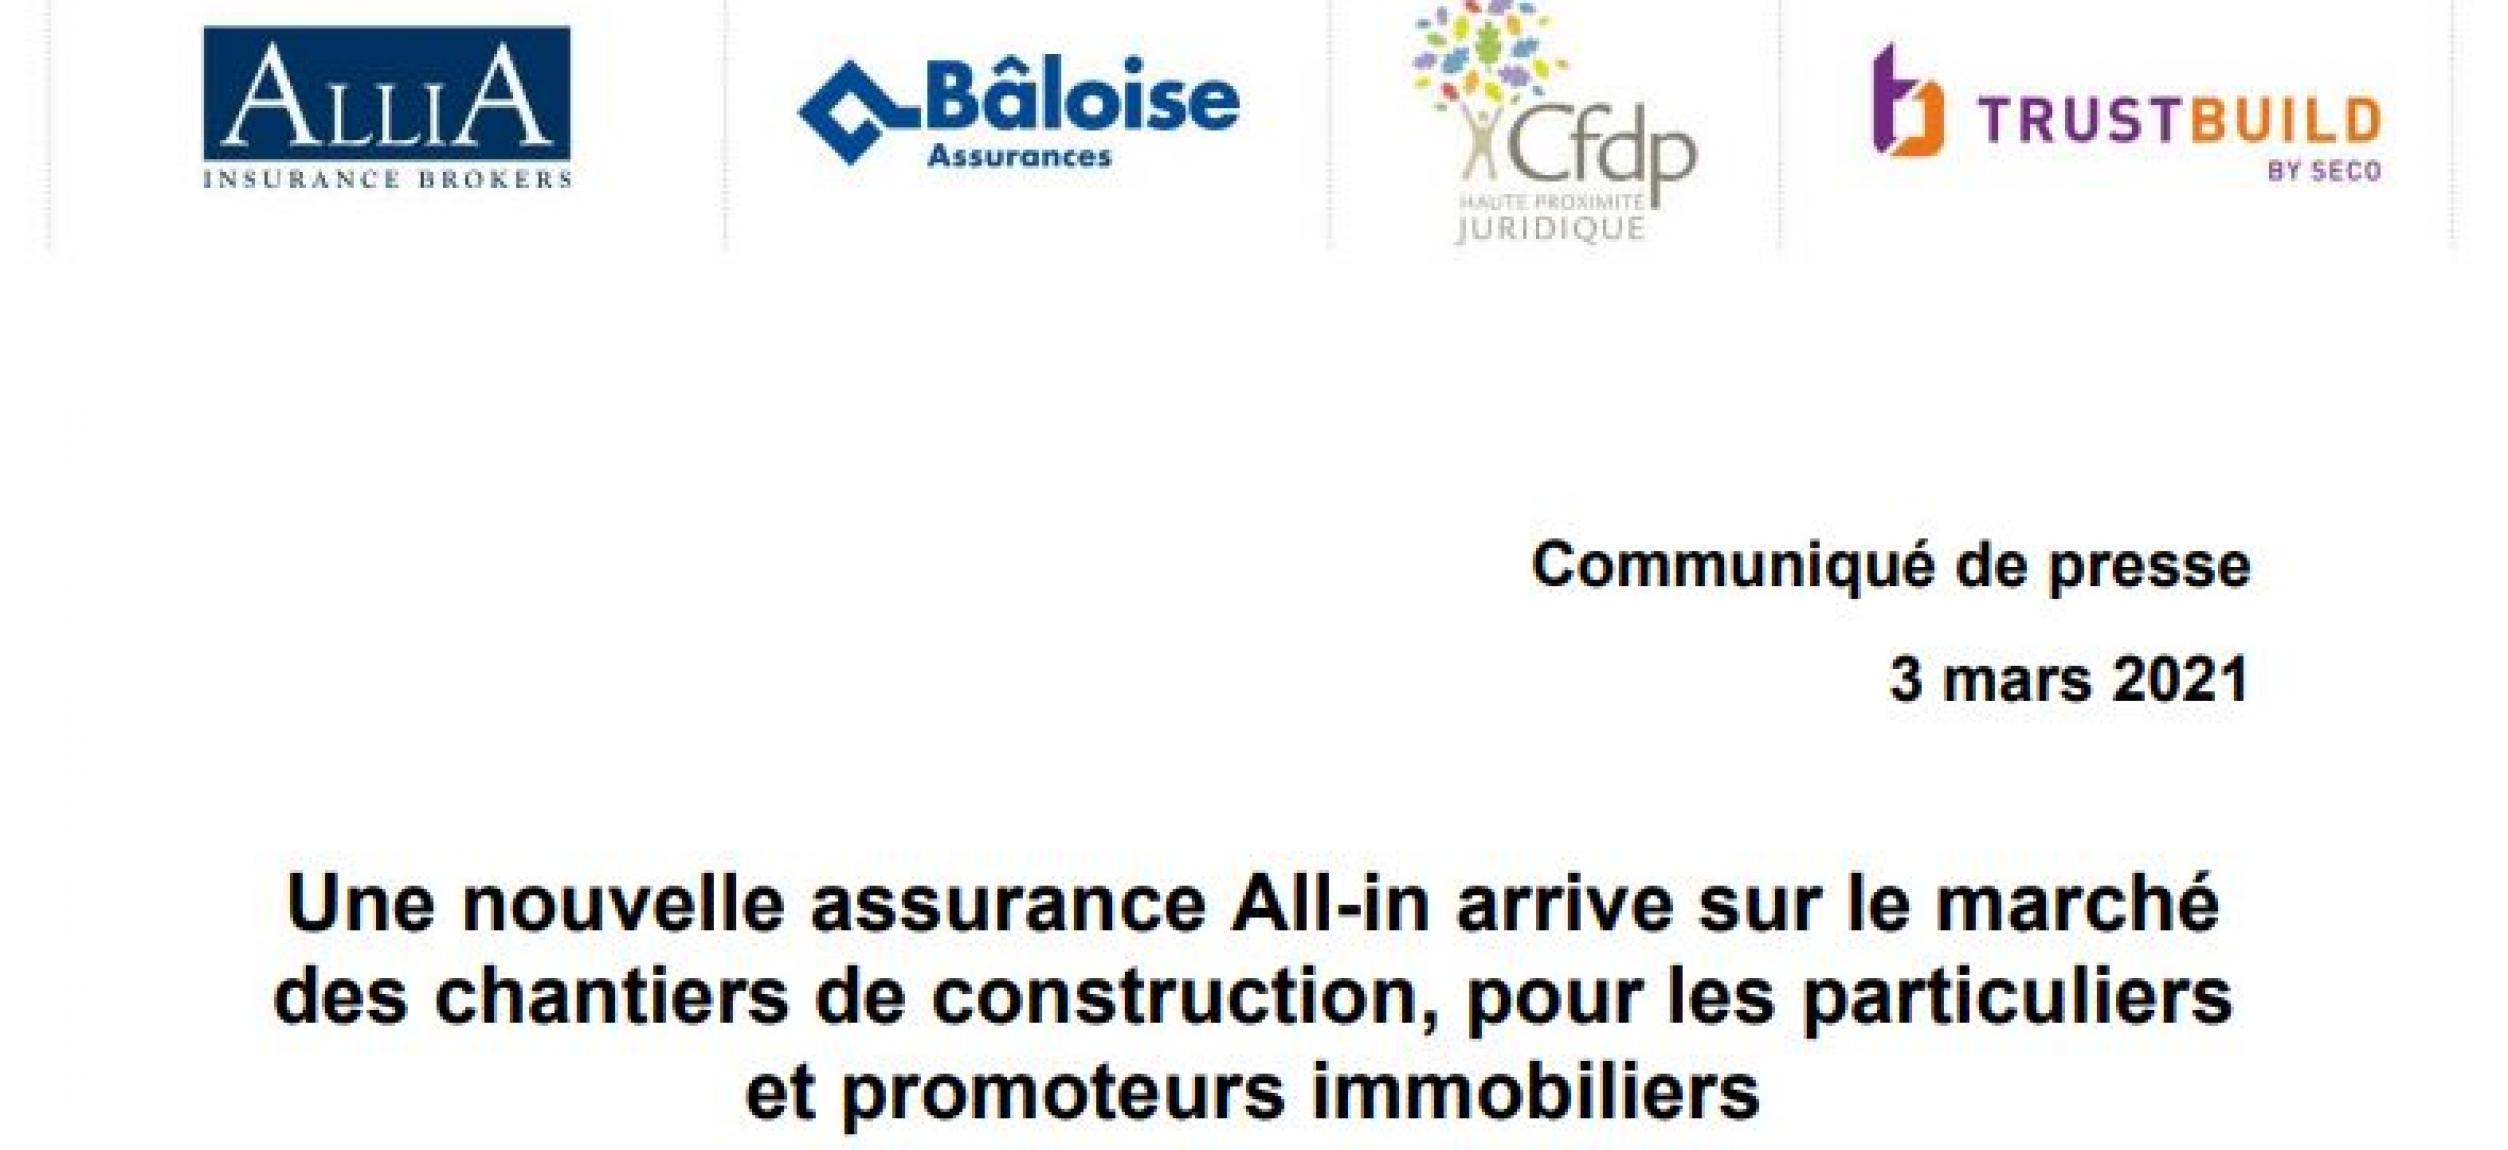 Communiqué de presse pour le lancement du produit d'assurance Bauheem par Baloise, AlliA, Cfdp et Trustbuild Luxembourg